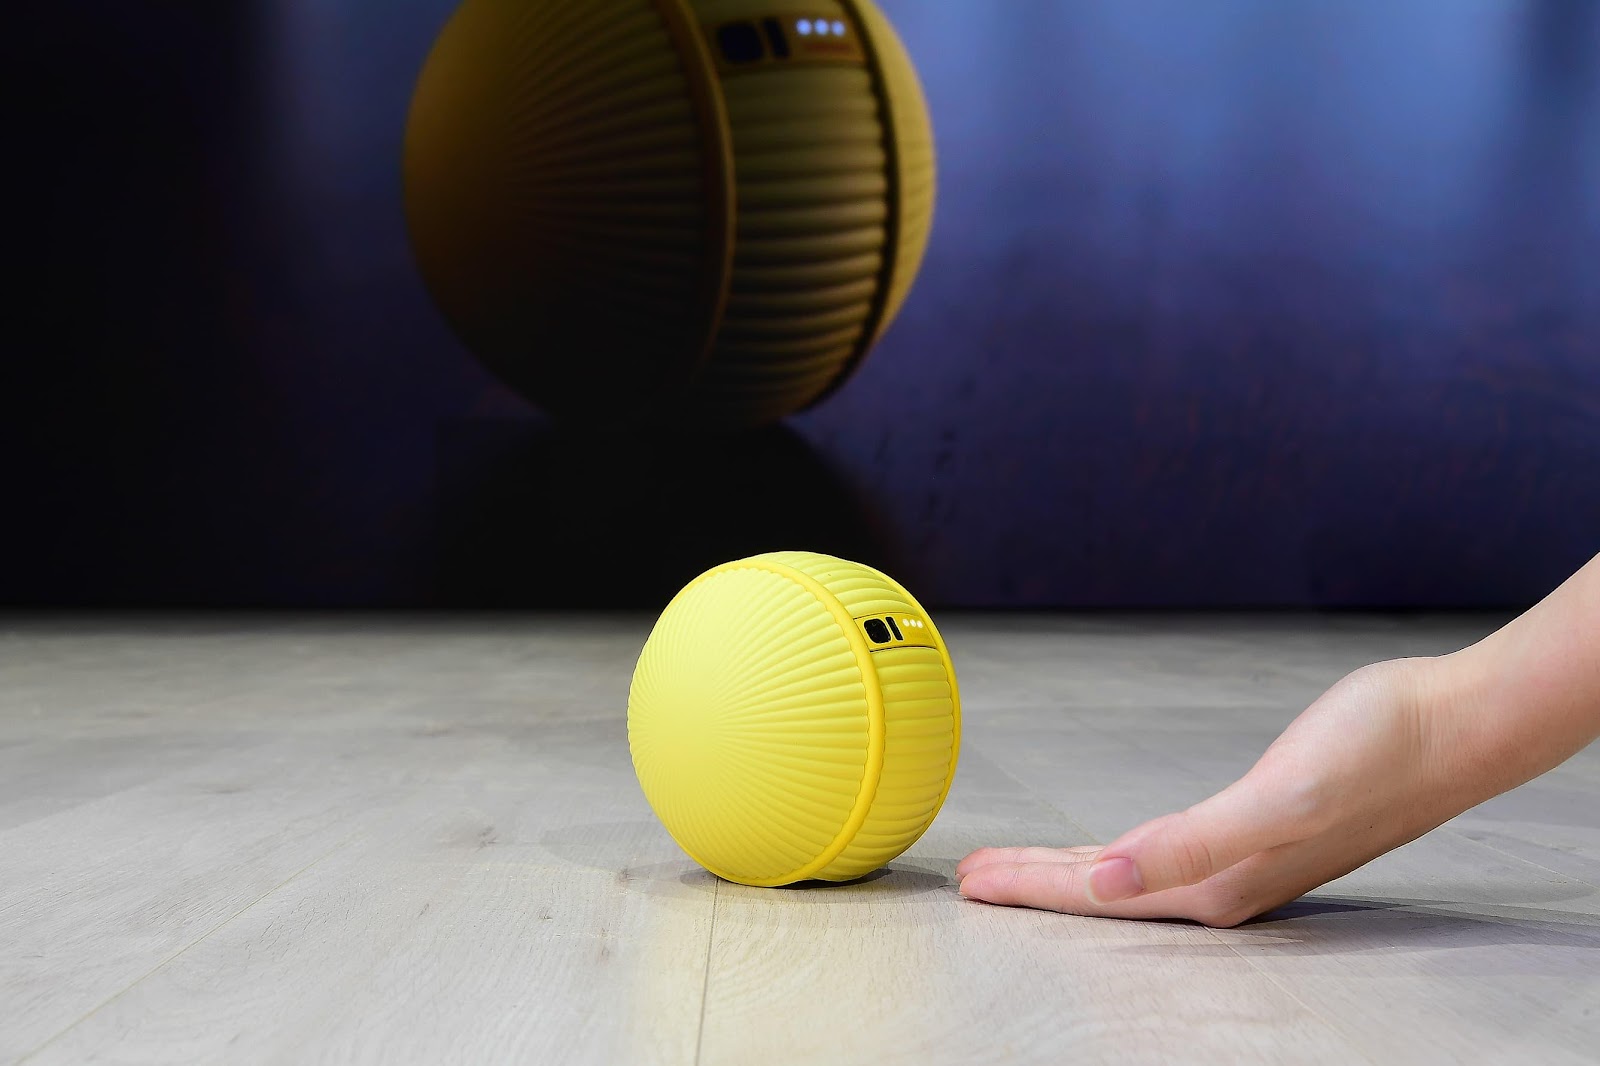 Samsung unveils Ballie robot companion at CES 2020